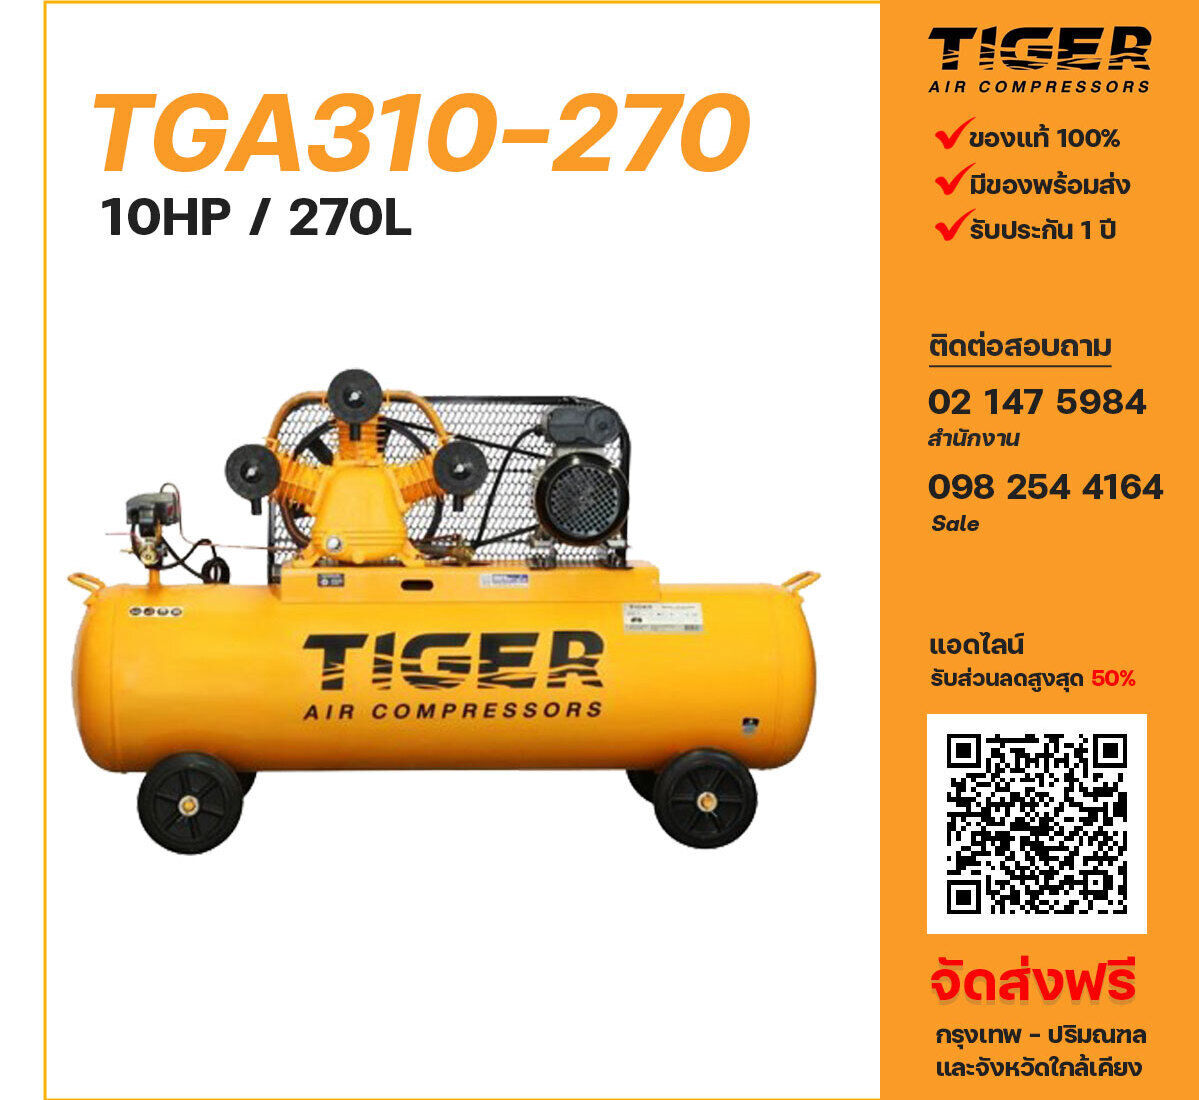 ปั๊มลมไทเกอร์ TIGER TGA310-270 380V ปั๊มลมลูกสูบ ขนาด 3 สูบ 10 แรงม้า 270 ลิตร TIGER พร้อมมอเตอร์ ไฟ 380V ส่งฟรี กรุงเทพฯ-ปริมณฑล รับประกัน 1 ปี